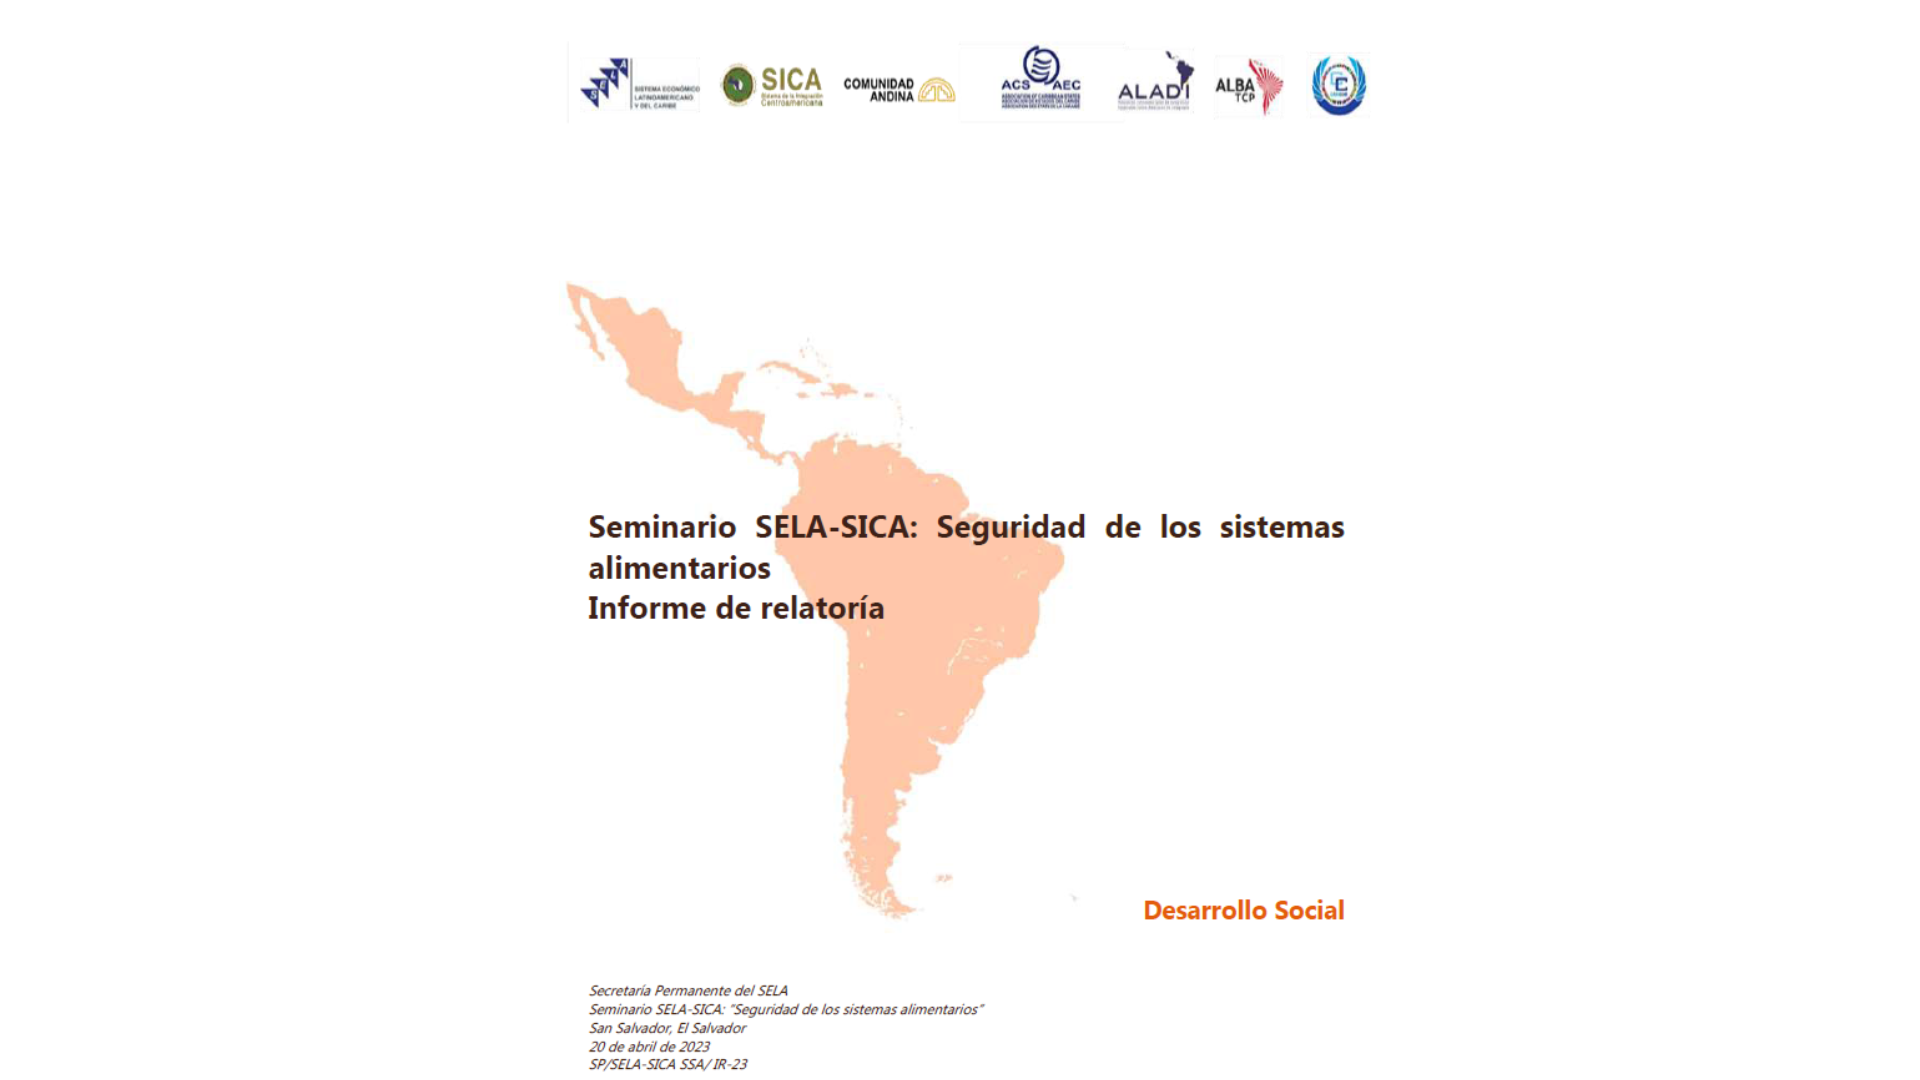 Seminario SELA-SICA: "Seguridad de los sistemas alimentarios" - Informe de relatoría